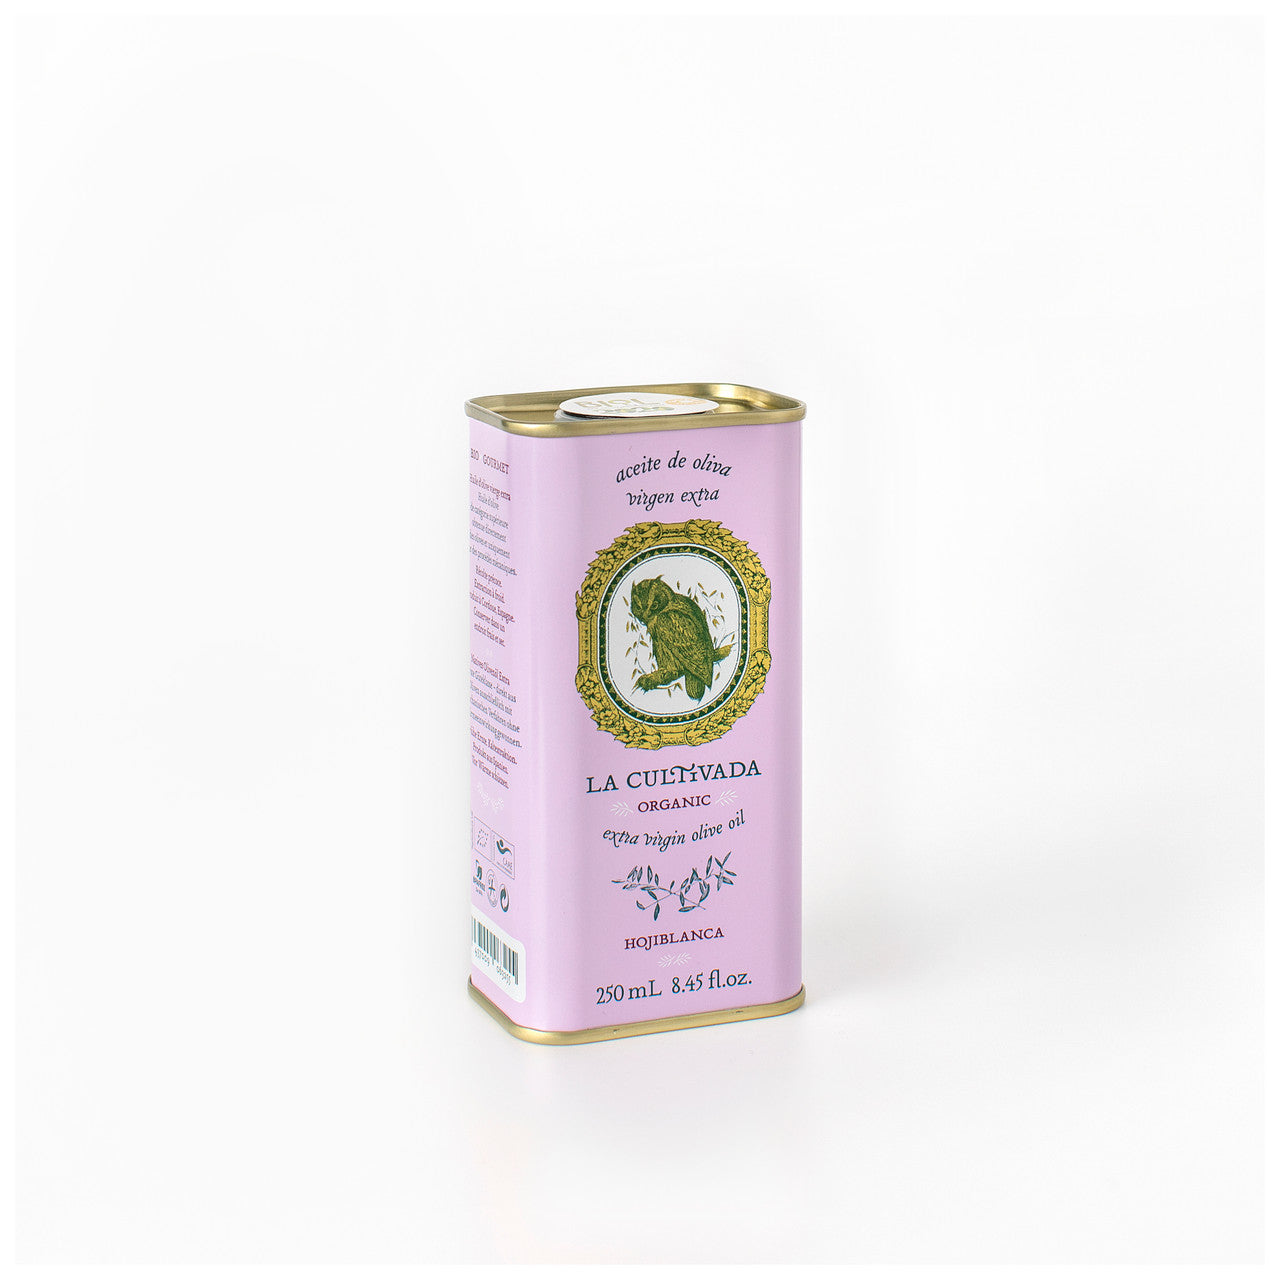 La Cultivada Hojiblanca Extra Virgin Olive Oil